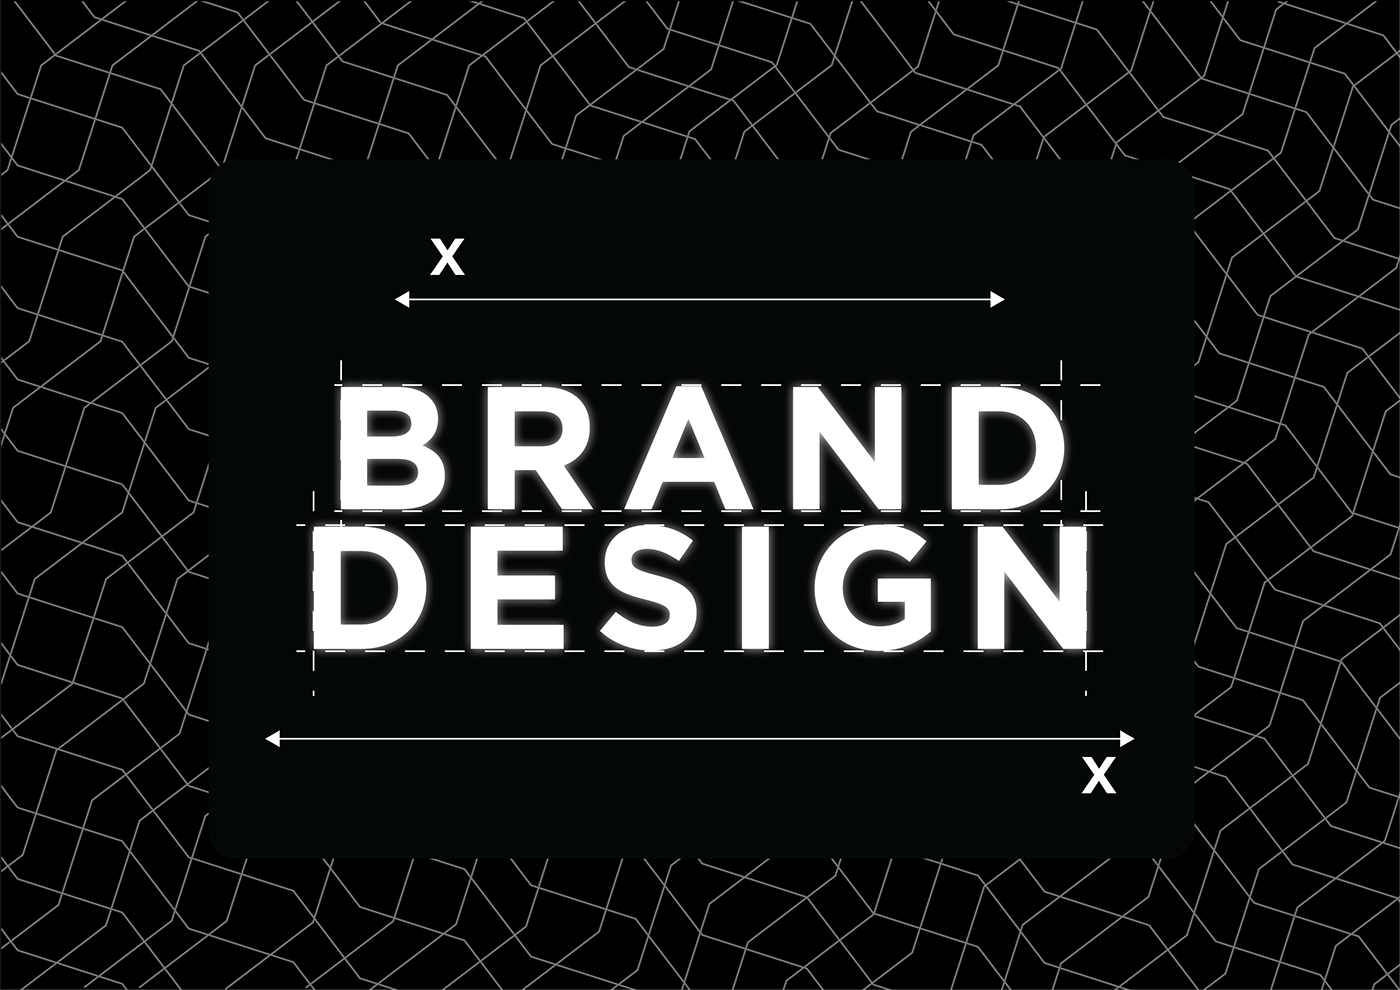 design adobe illustrator Logo Design brand identity Social media post banner ads